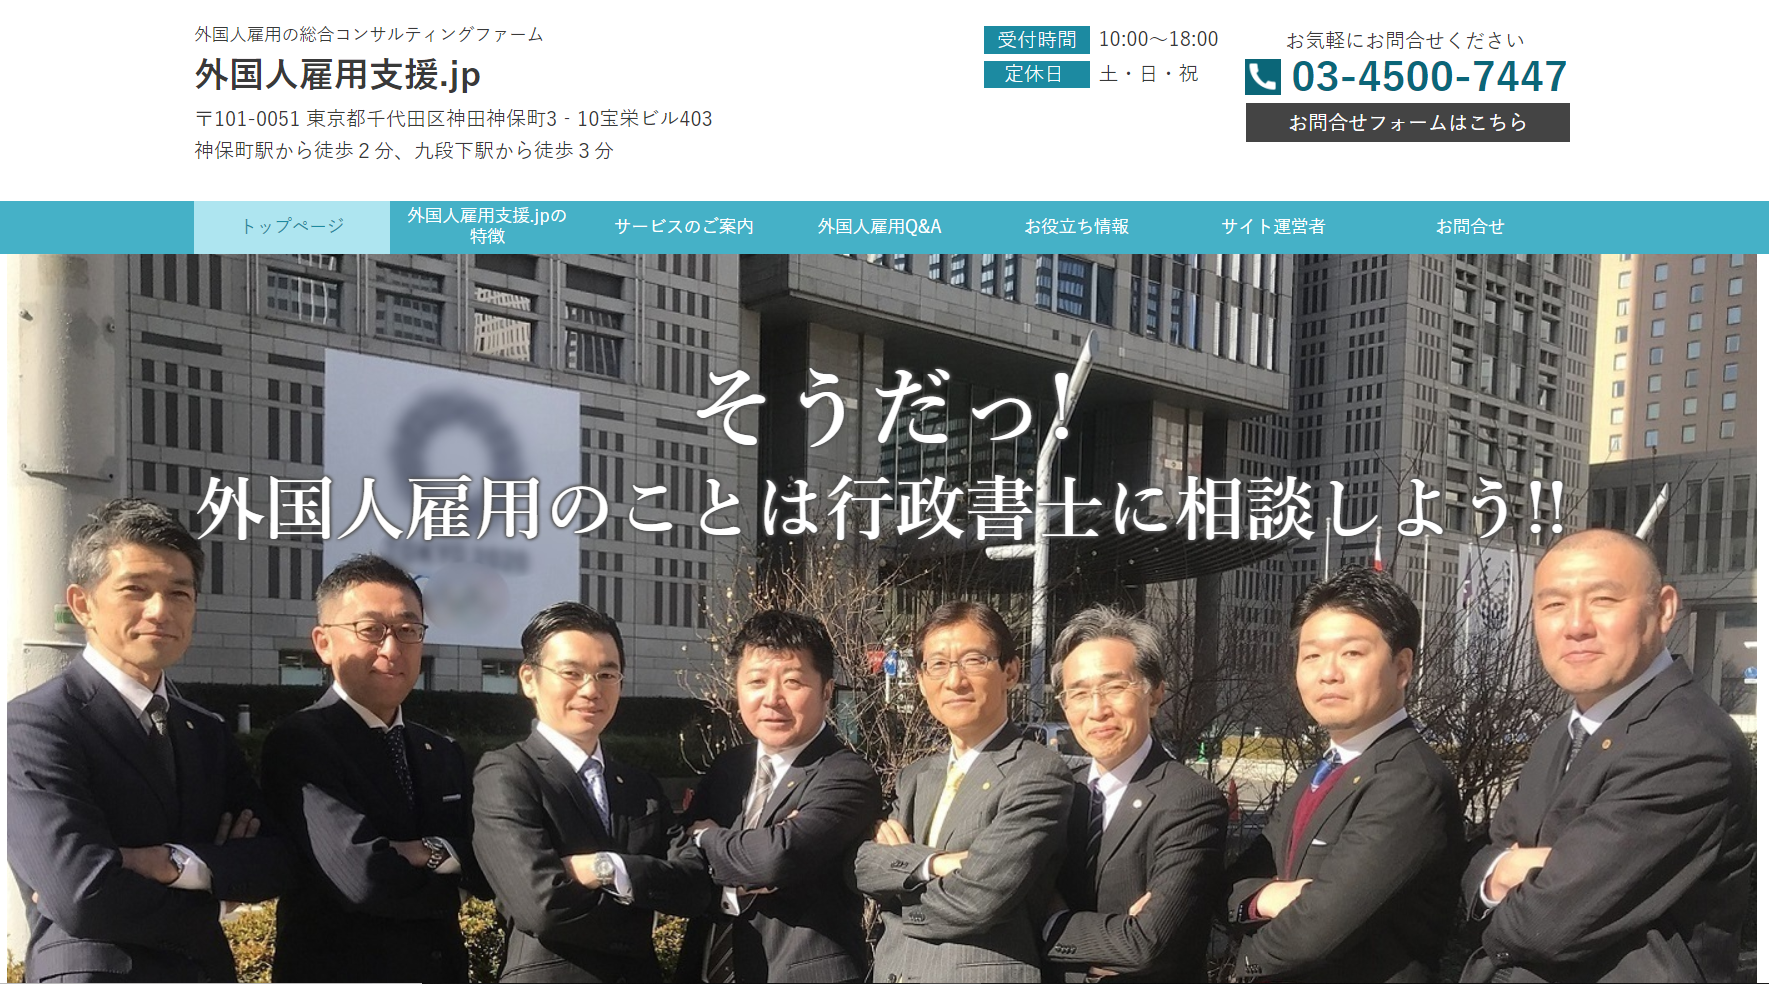 外国人雇用支援.jpの採用HPです